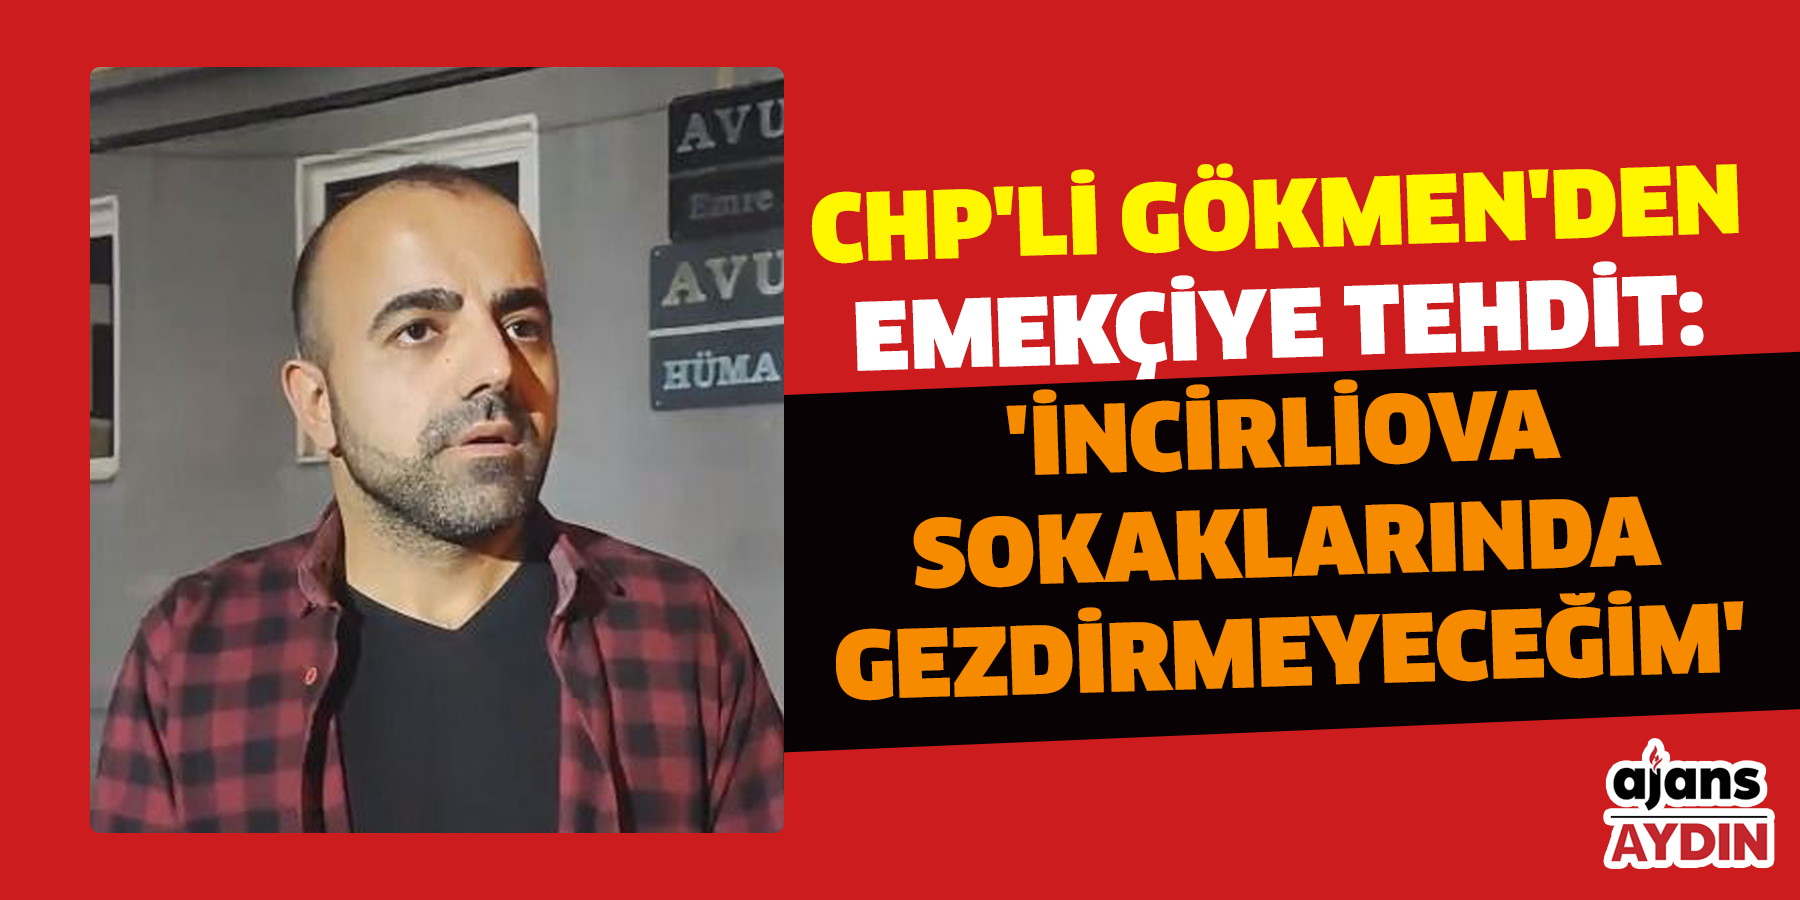 CHP'li Gökmen'den emekçiye tehdit: 'İncirliova sokaklarında gezdirmeyeceğim'